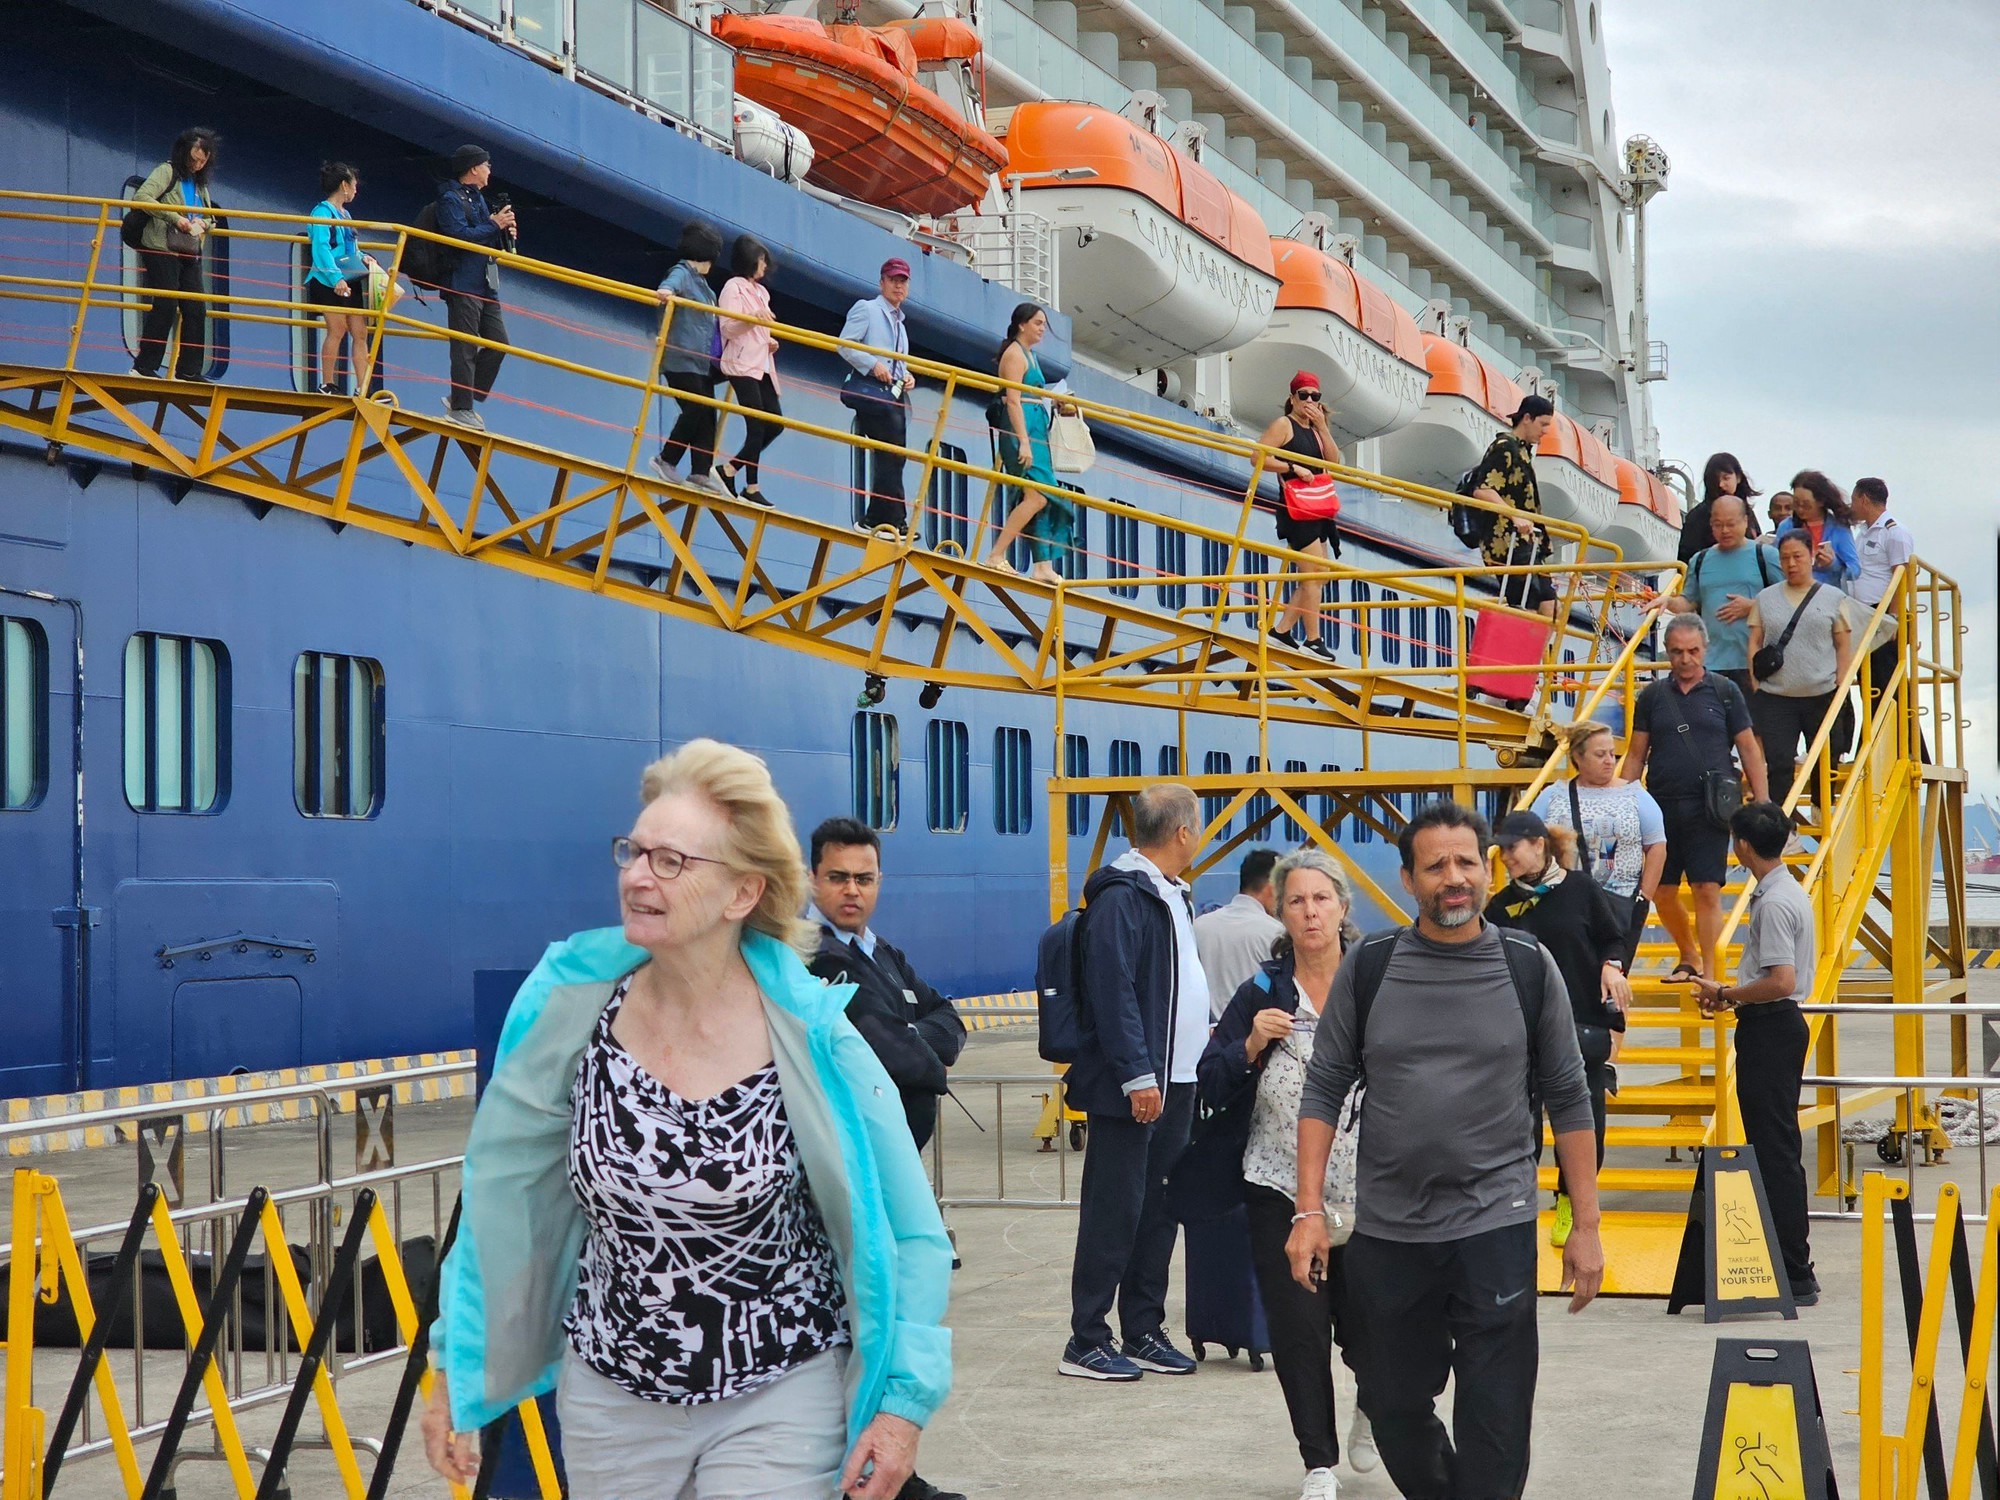 Siêu du thuyền đưa hơn 2.600 khách quốc tế cập Cảng tàu khách quốc tế Hạ Long - Ảnh 2.